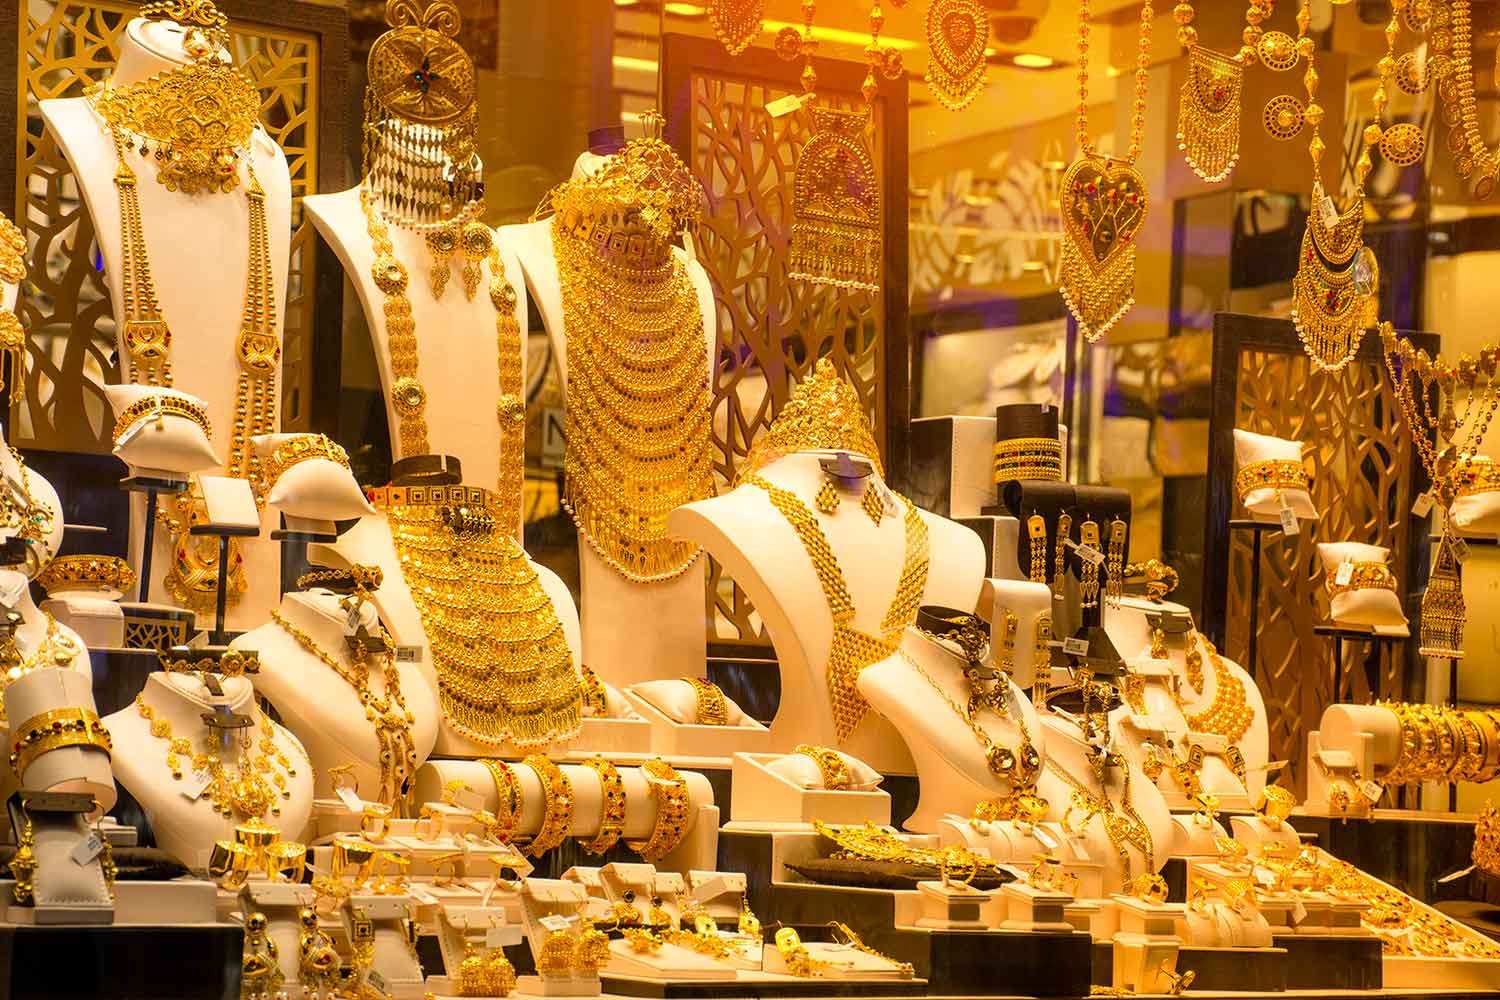 أسعار الذهب تتراجع خلال تعاملات اليوم  الخميس 28 نوفمبر 2019بالسوق المصرية.. وجرام 21 يسجل رقم جديد